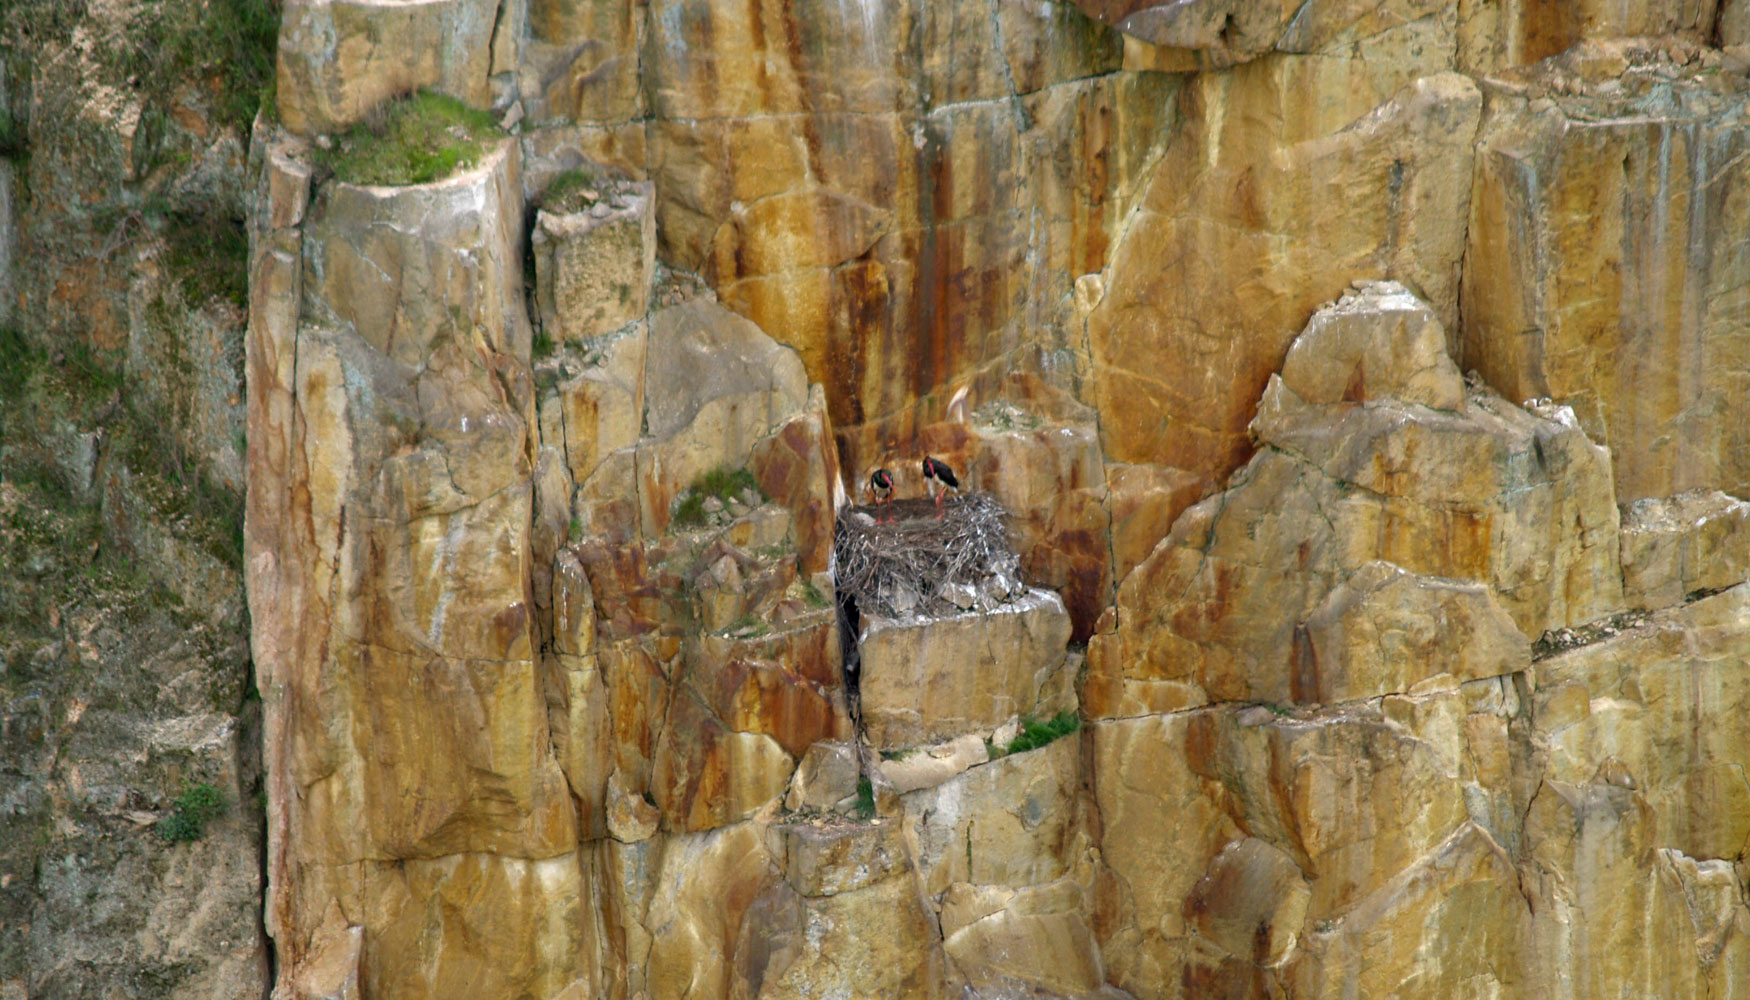 Fig 11. Nido de cigea negra construido sobre la antigua corta de Barruecopardo. Fuente: Ormonde mining